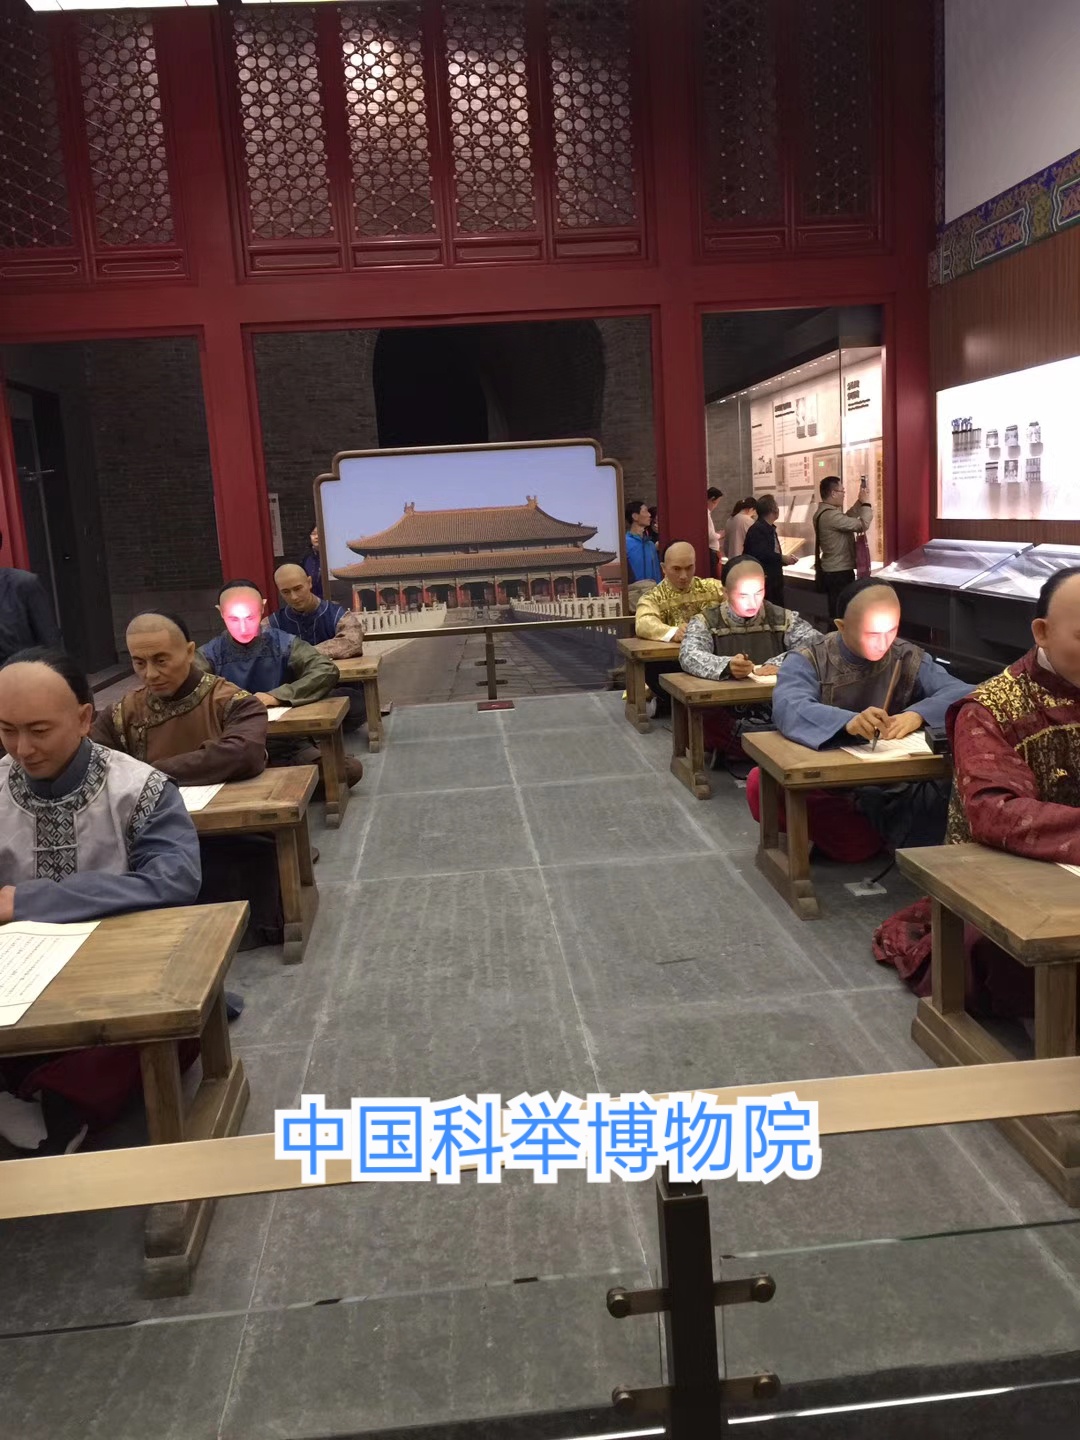 中国唯一的科举博物馆——南京科举博物馆